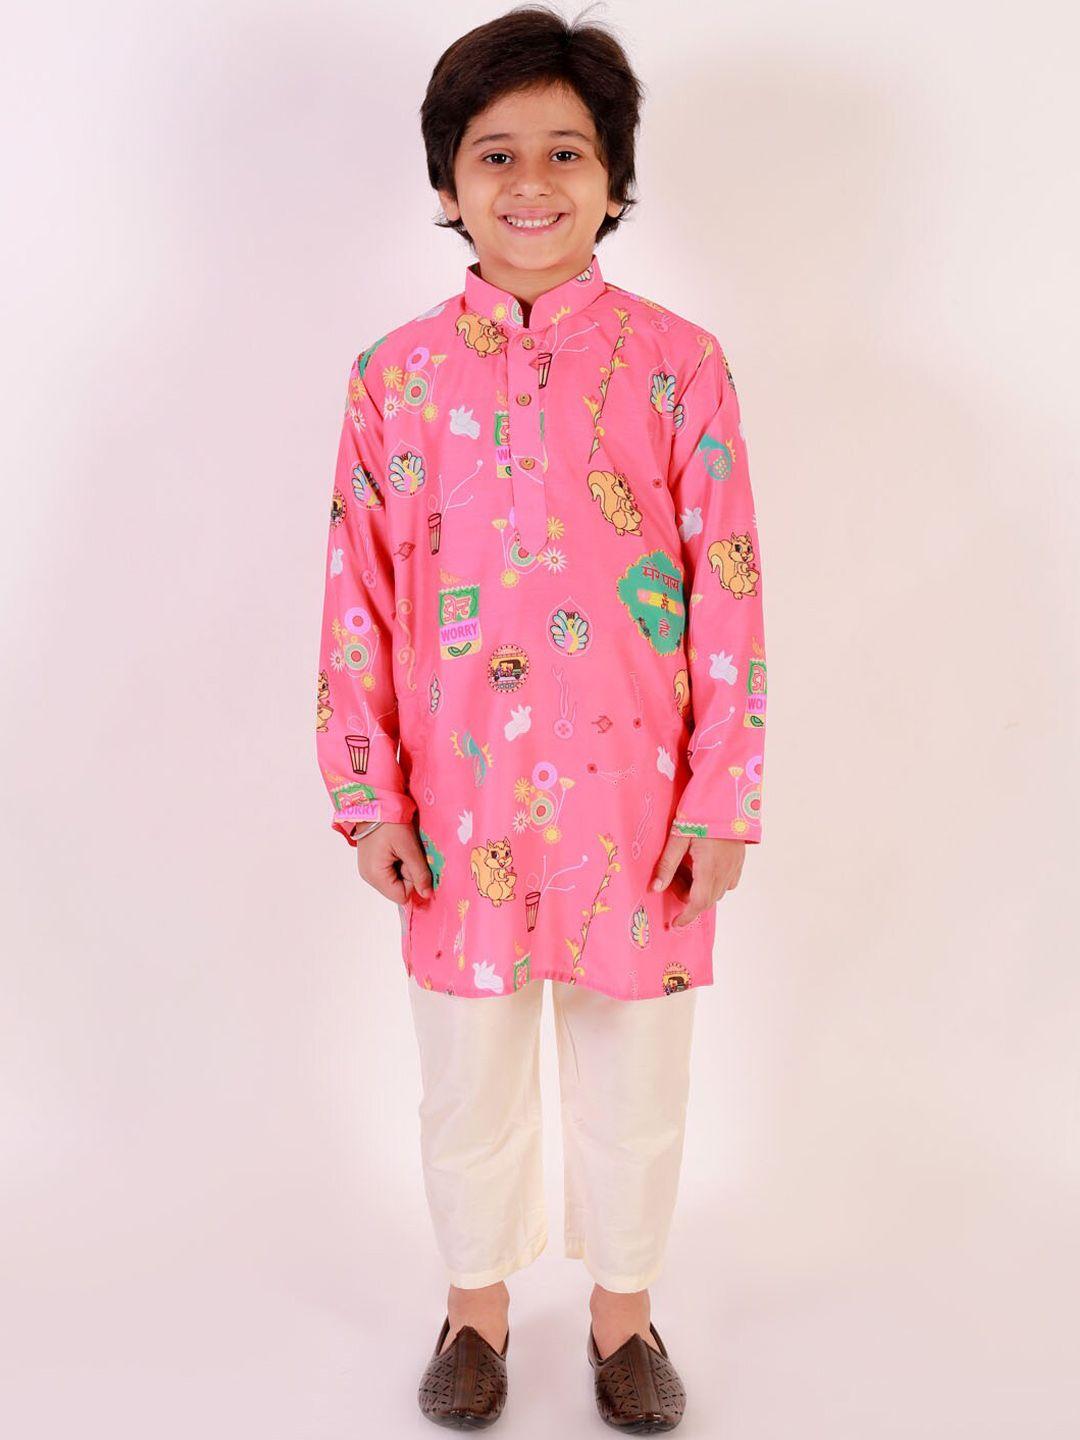 jbn creation boys printed kurta with pyjamas